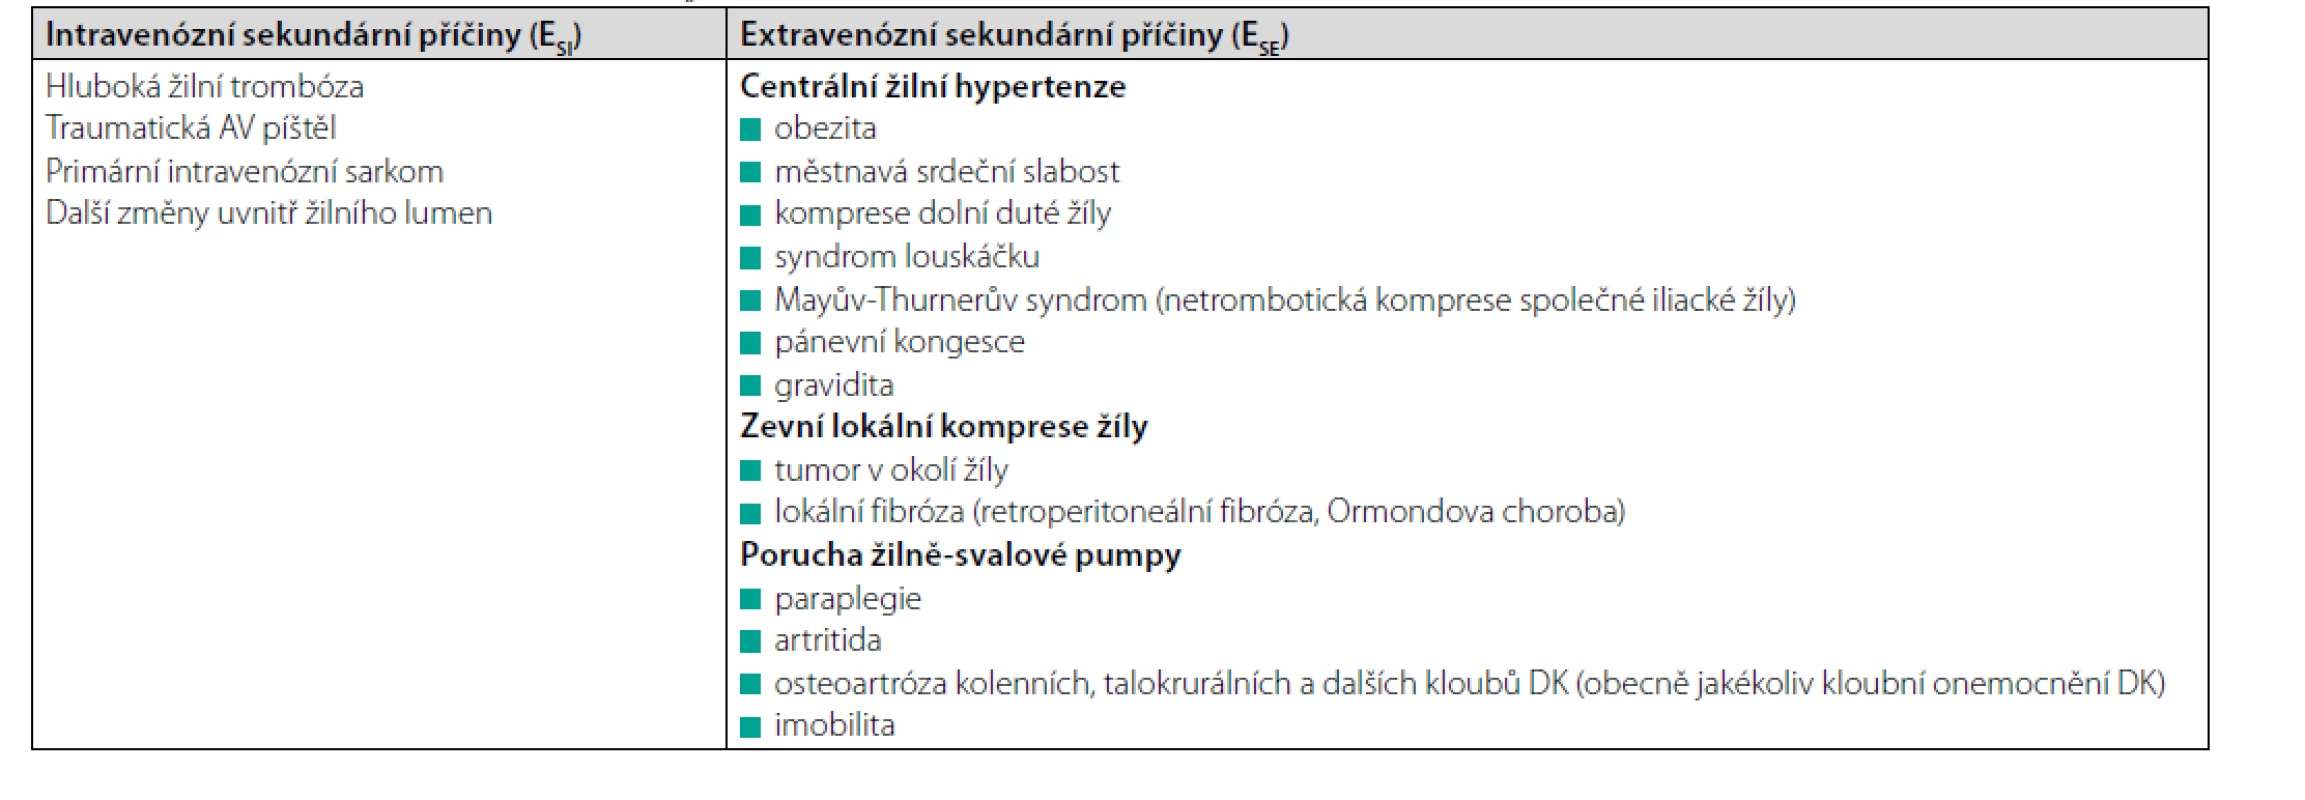 Subkategorie sekundární etiologie (ES ) chronického žilního onemocnění